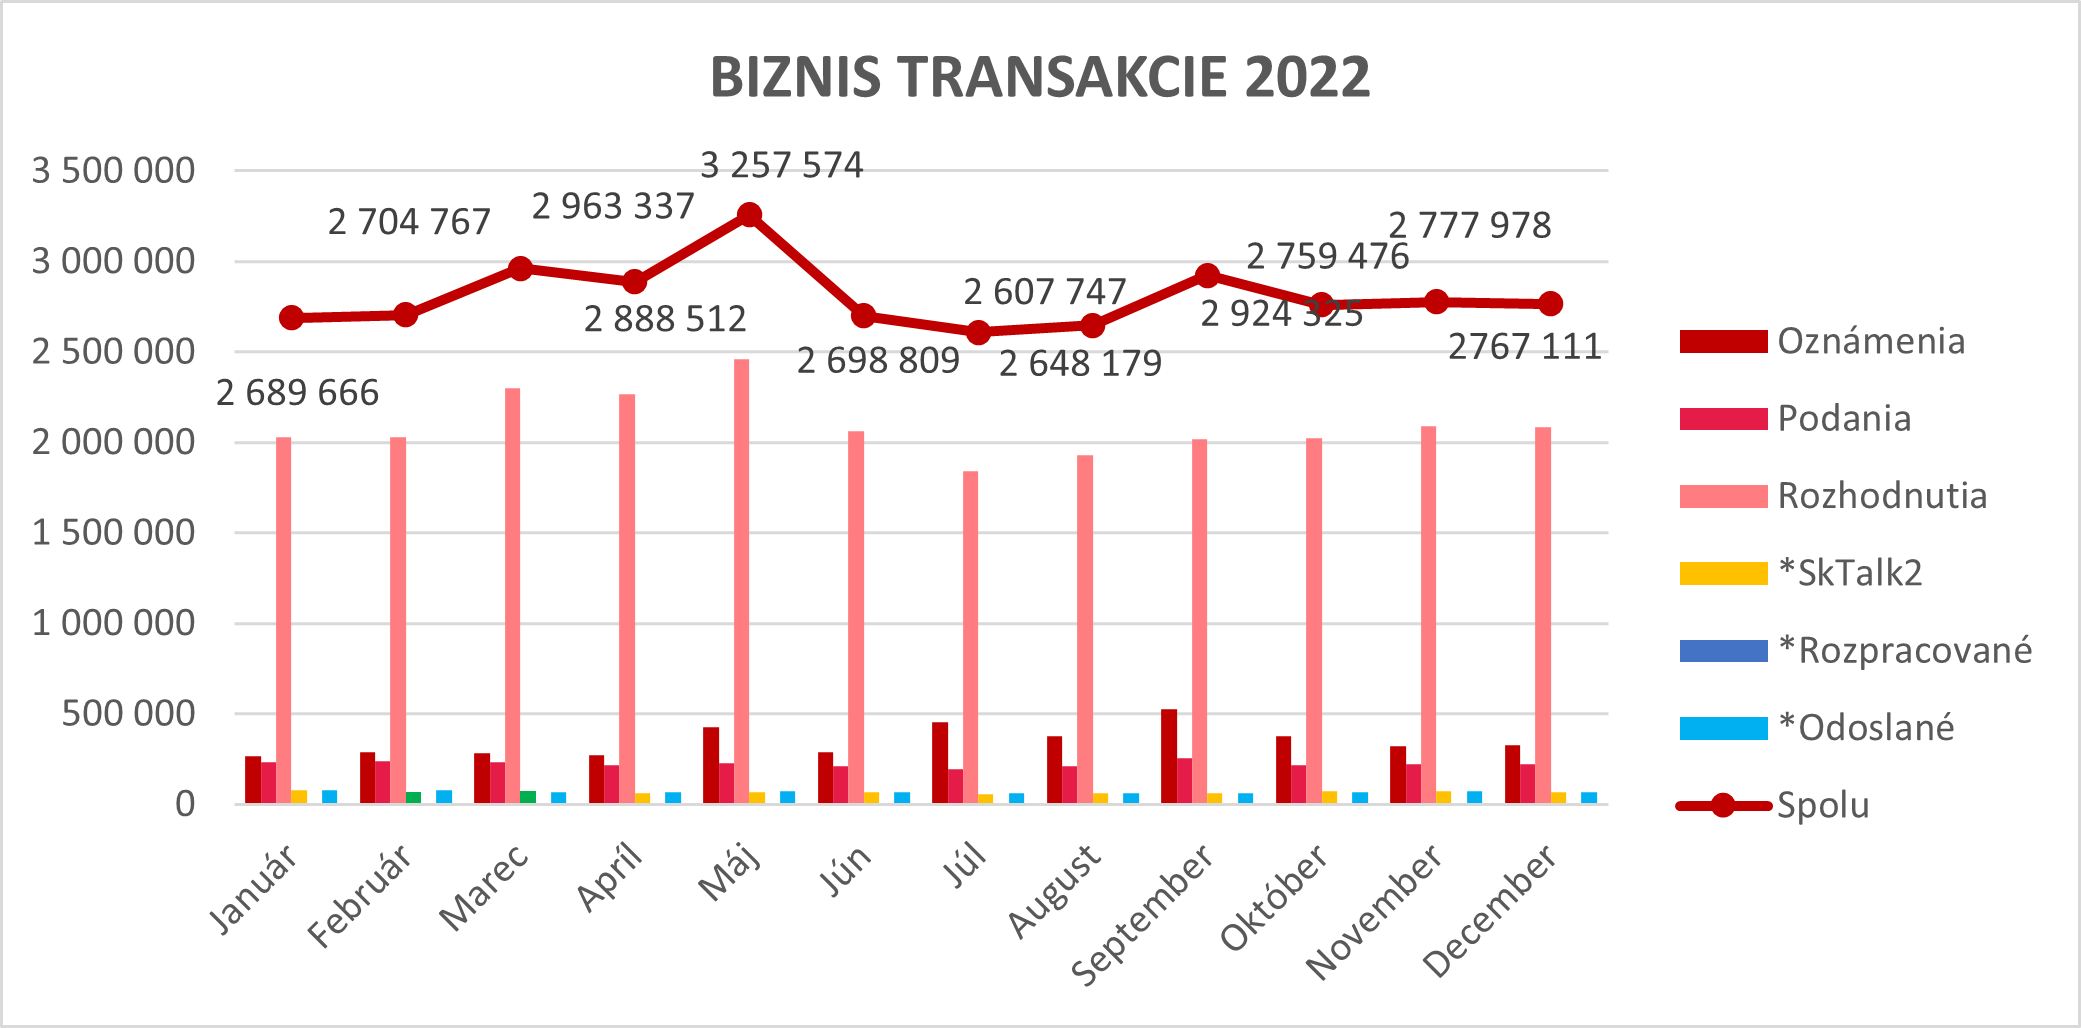 Ilustračný graf biznis transakcií za rok 2022.